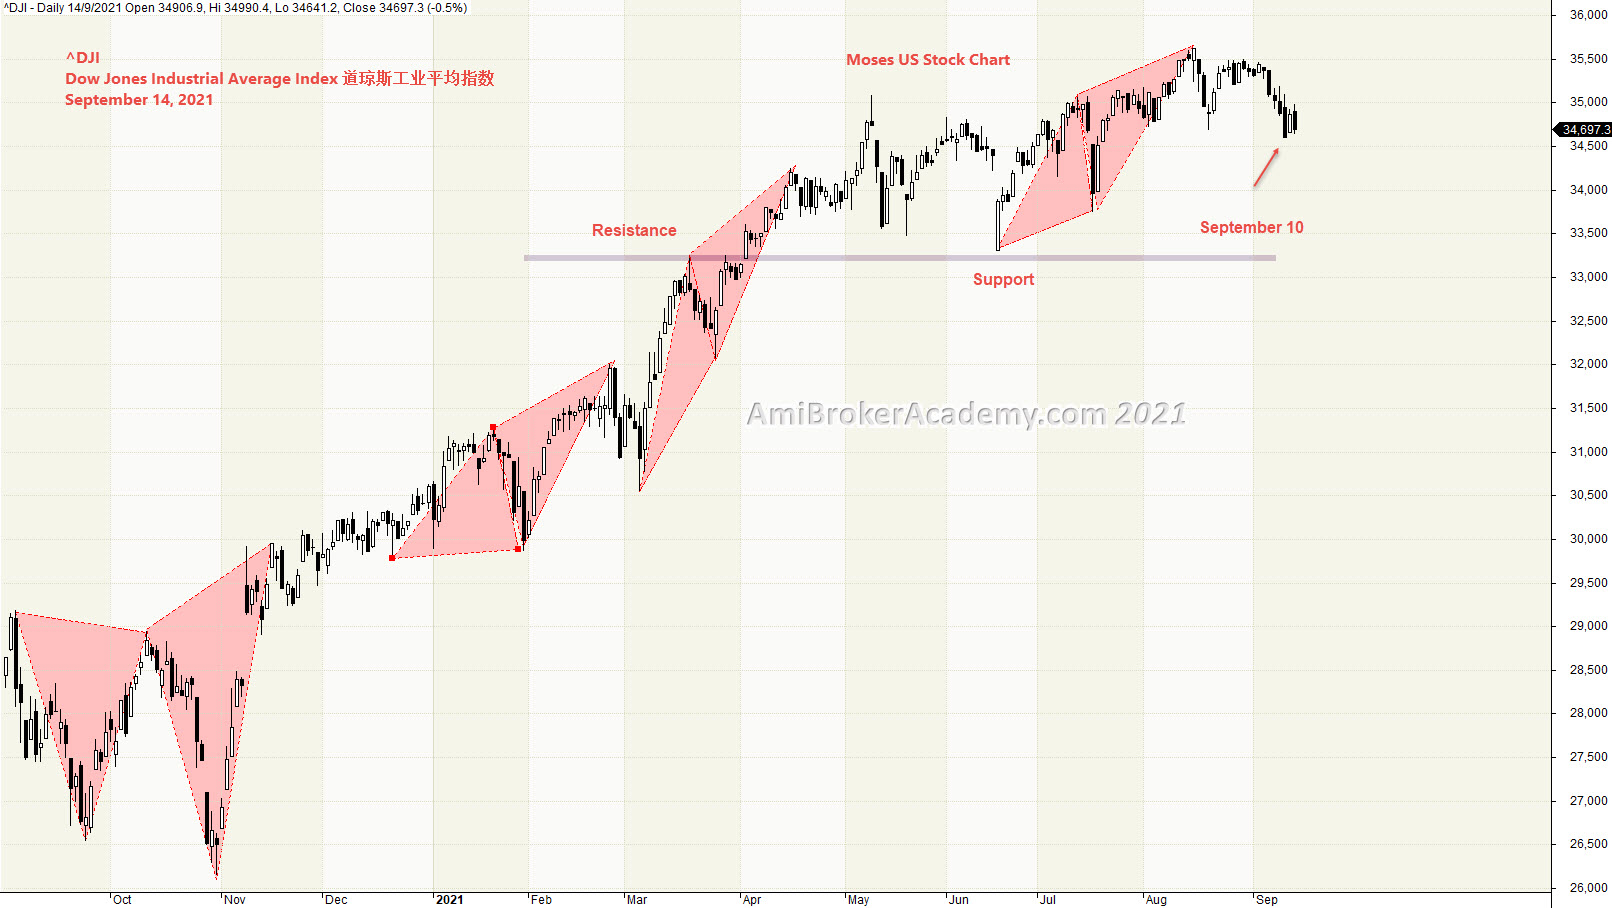 Dow Jones Industrial Average Index, 道指数, Geometry, Price Action